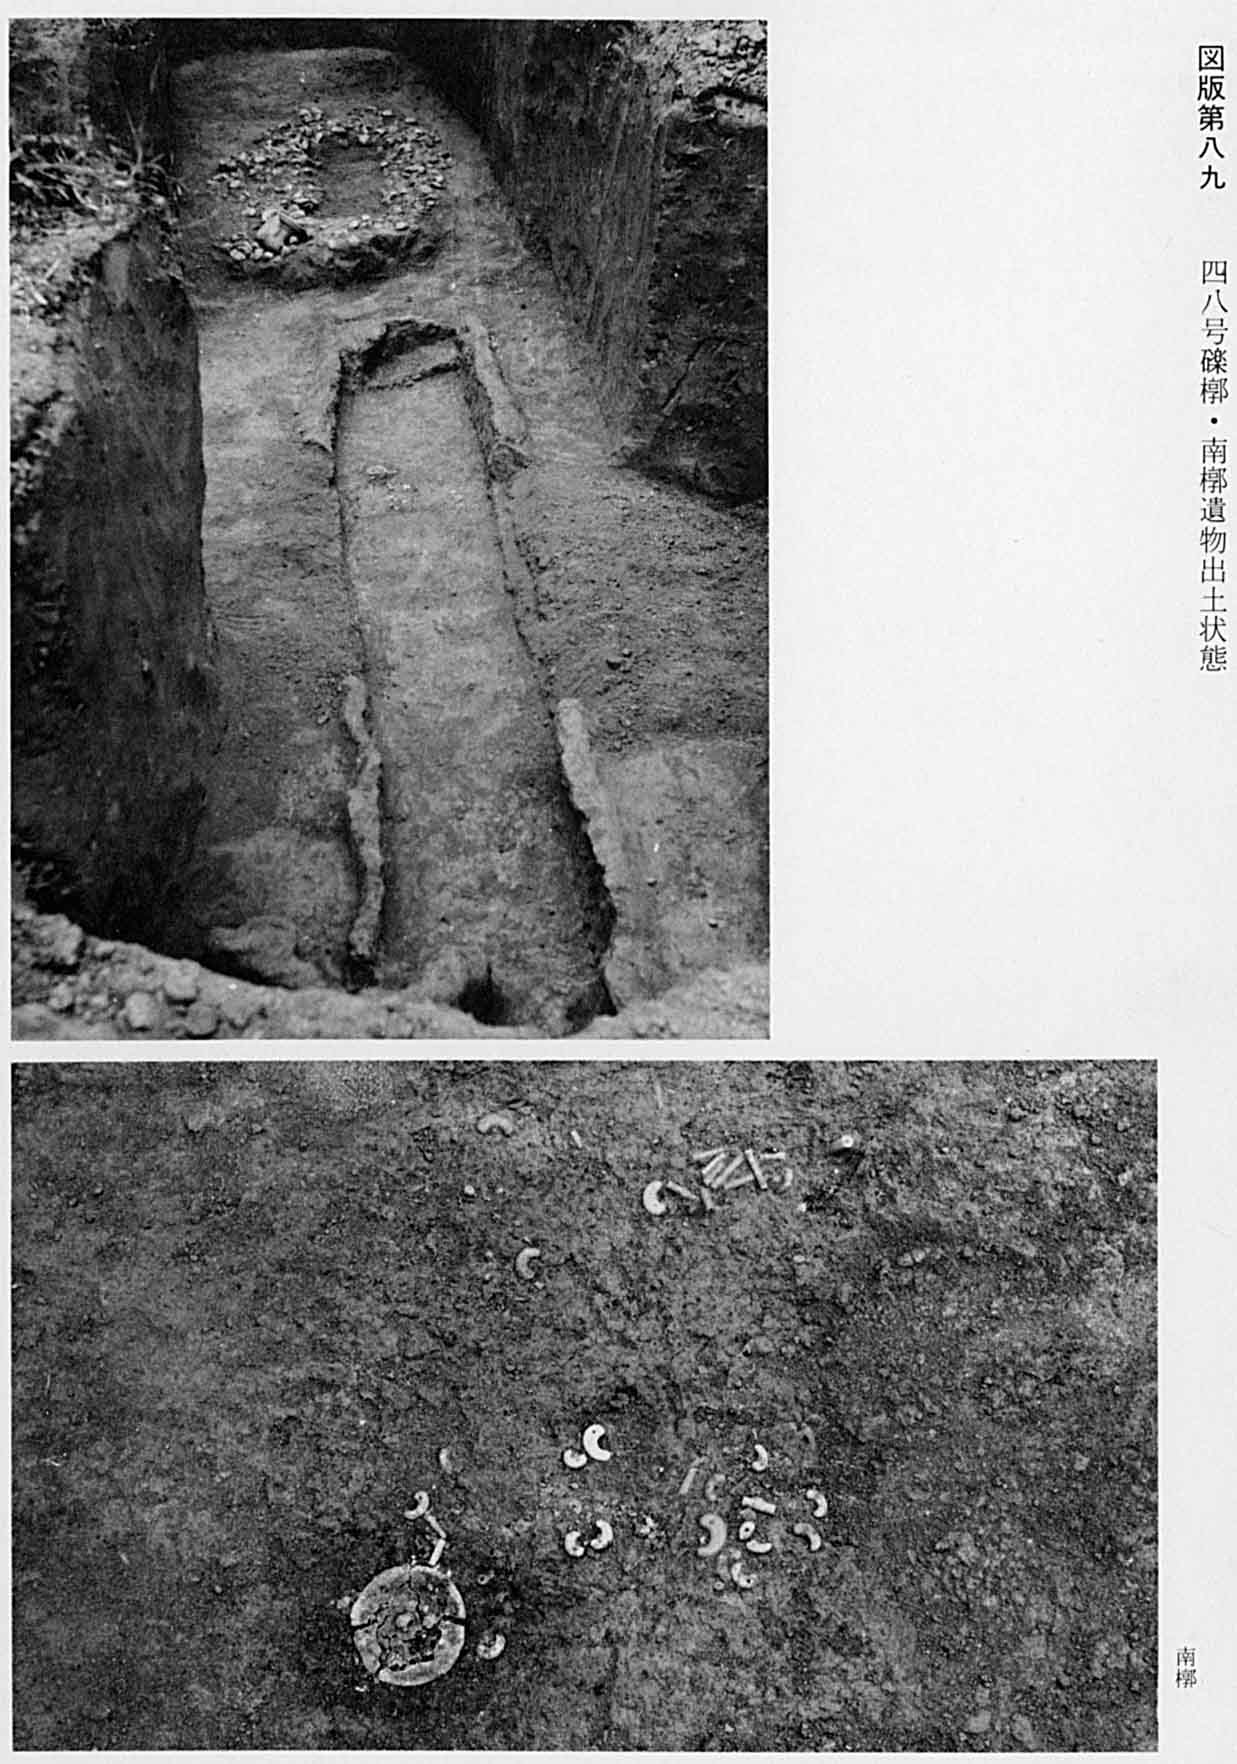 出土された状態の墓地と、そこから発掘された勾玉や鏡などを撮影したモノクロ写真（図版89 48号礫槨・南槨遺物出土状態）